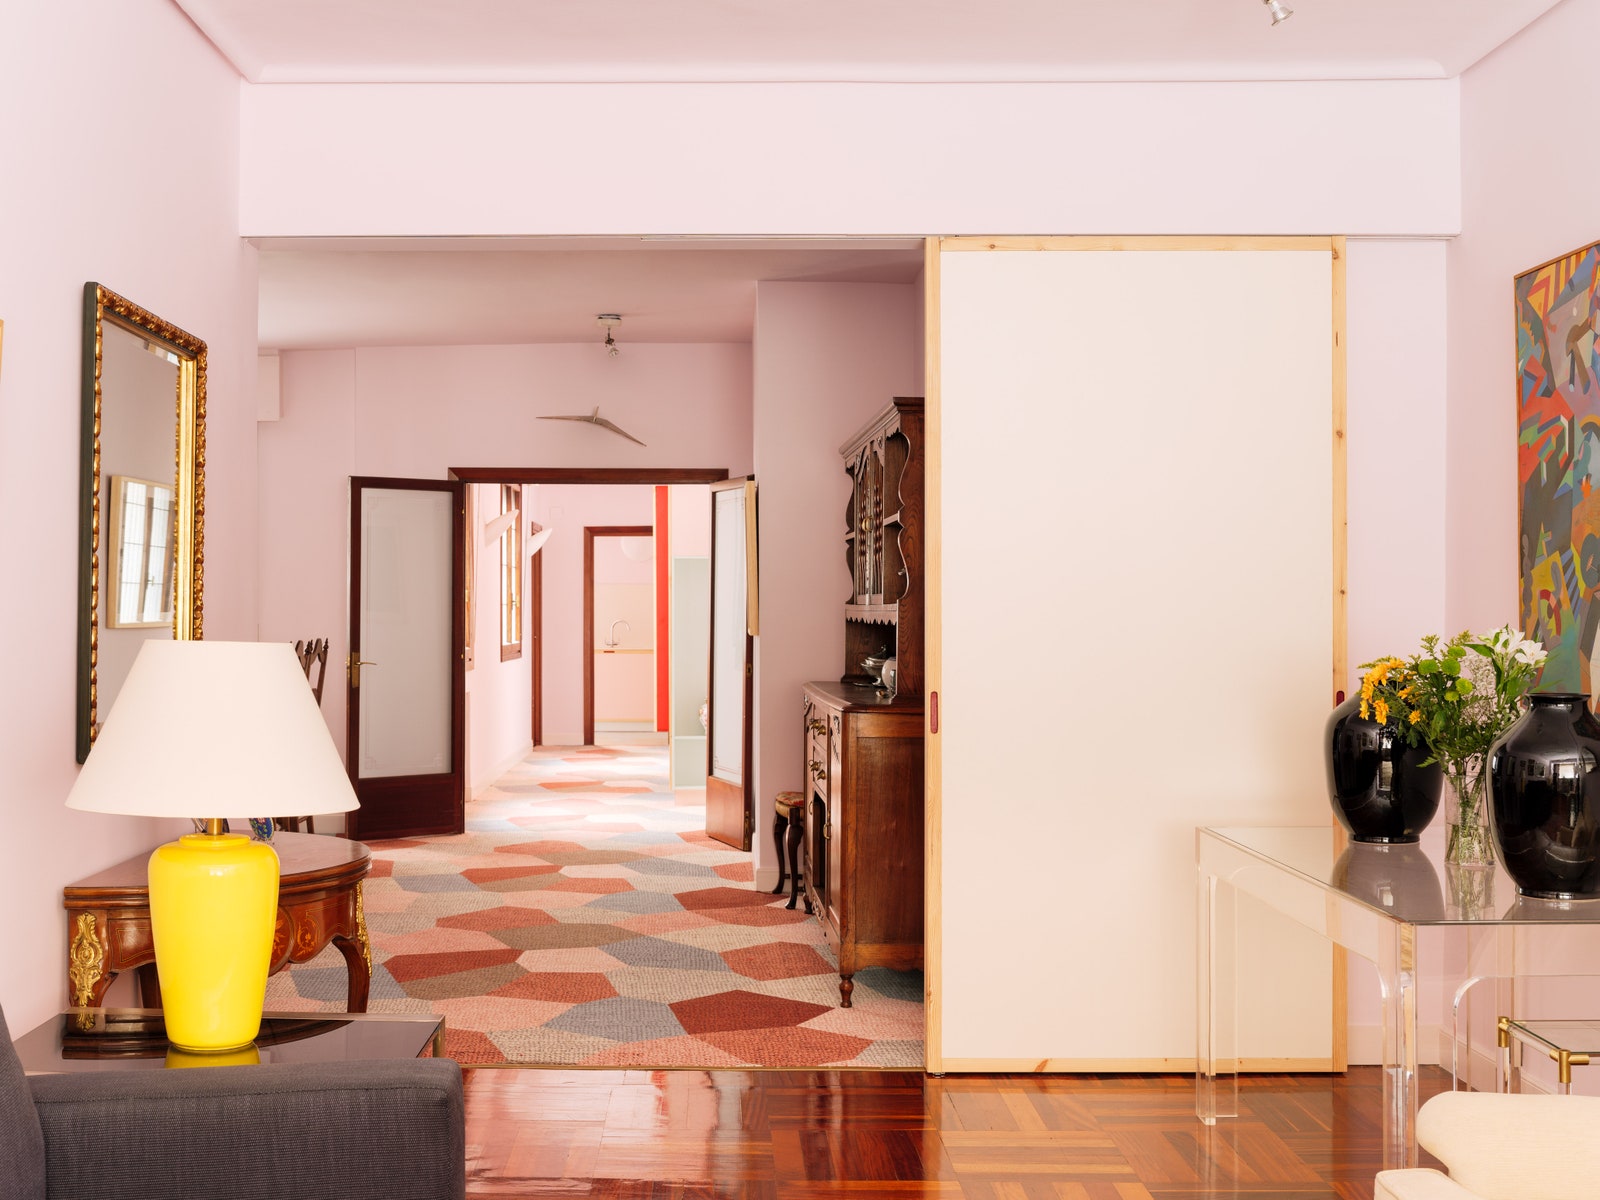 Розовая квартира в Бильбао по проекту студии Azab